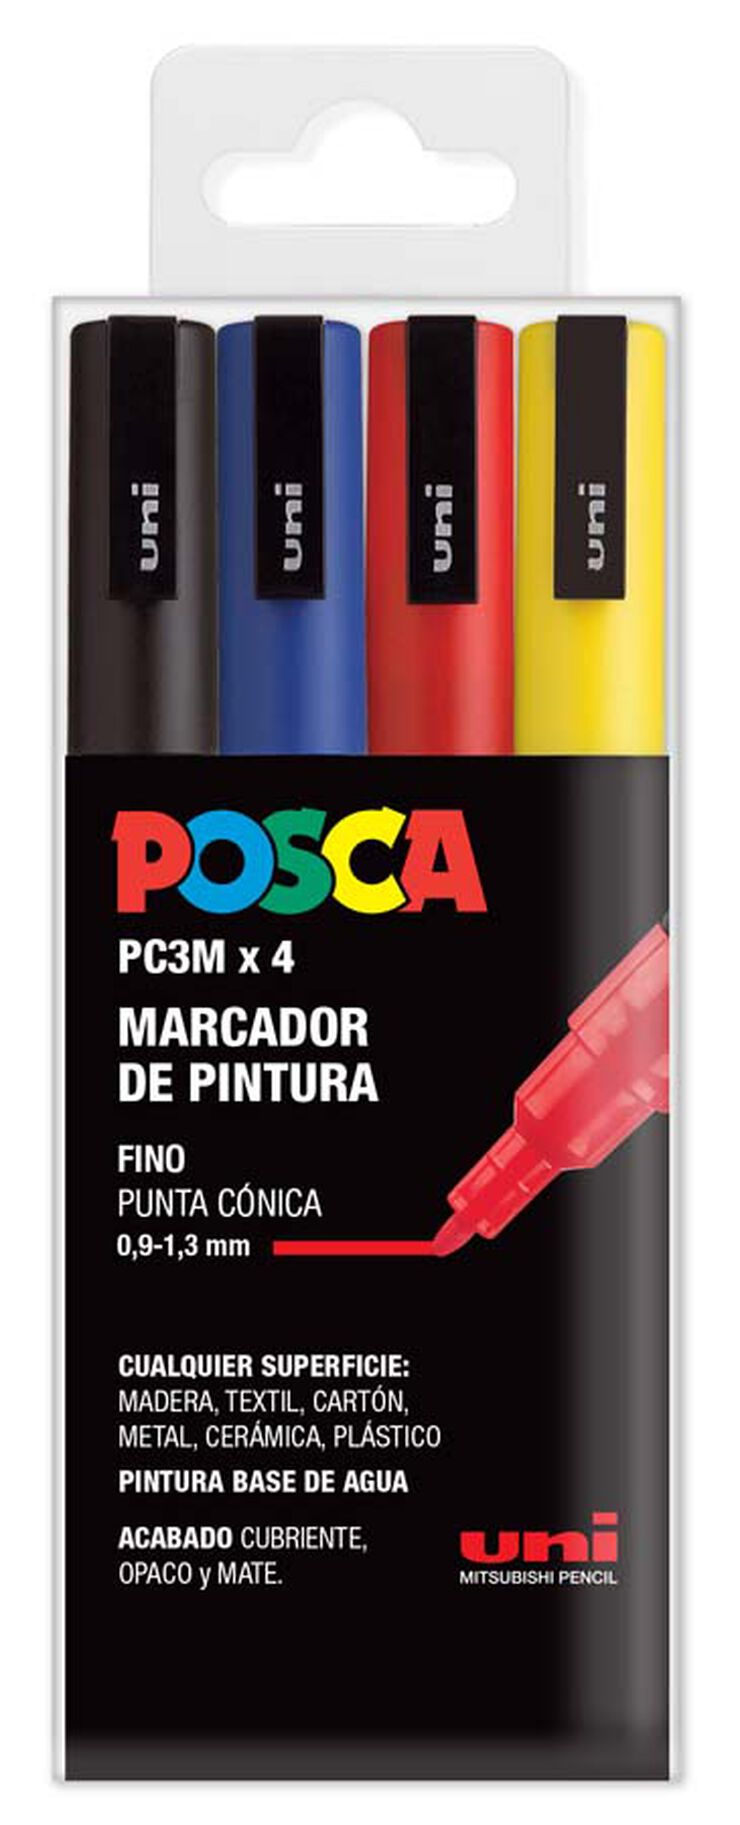 Marcadors Posca 0,7 mm Metal 4 colors